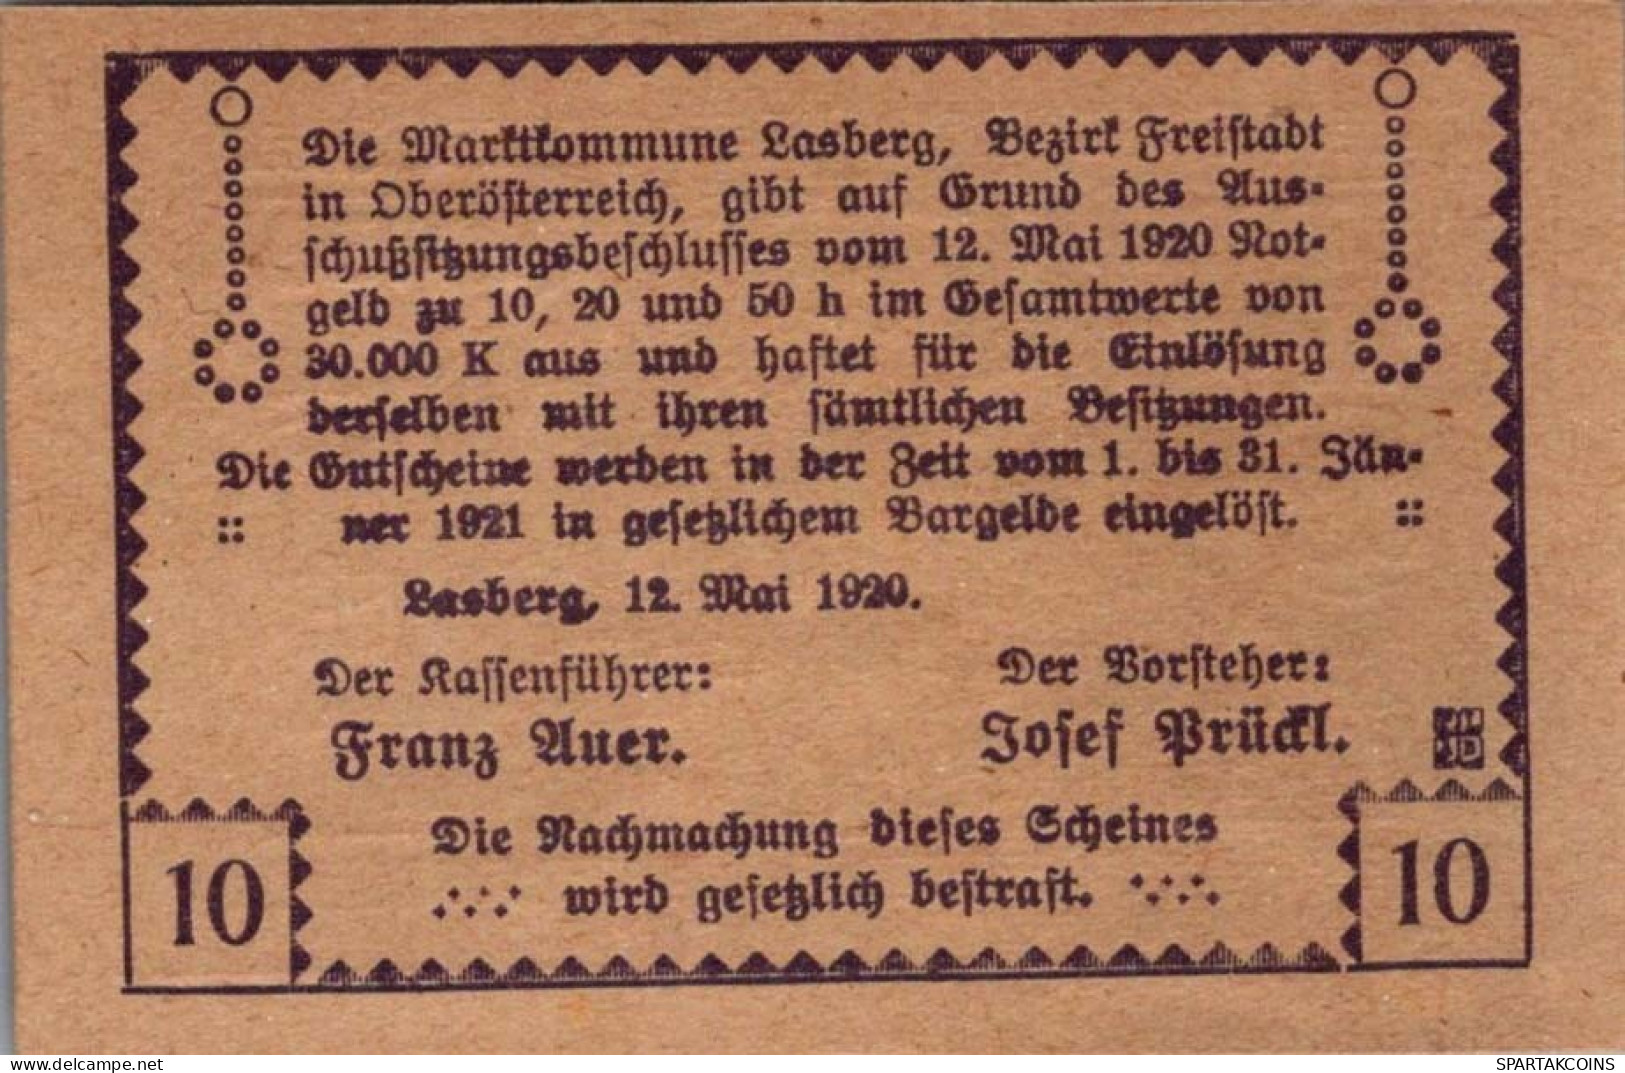 10 HELLER 1920 Stadt LASBERG Oberösterreich Österreich Notgeld Papiergeld Banknote #PG935 - [11] Emissions Locales